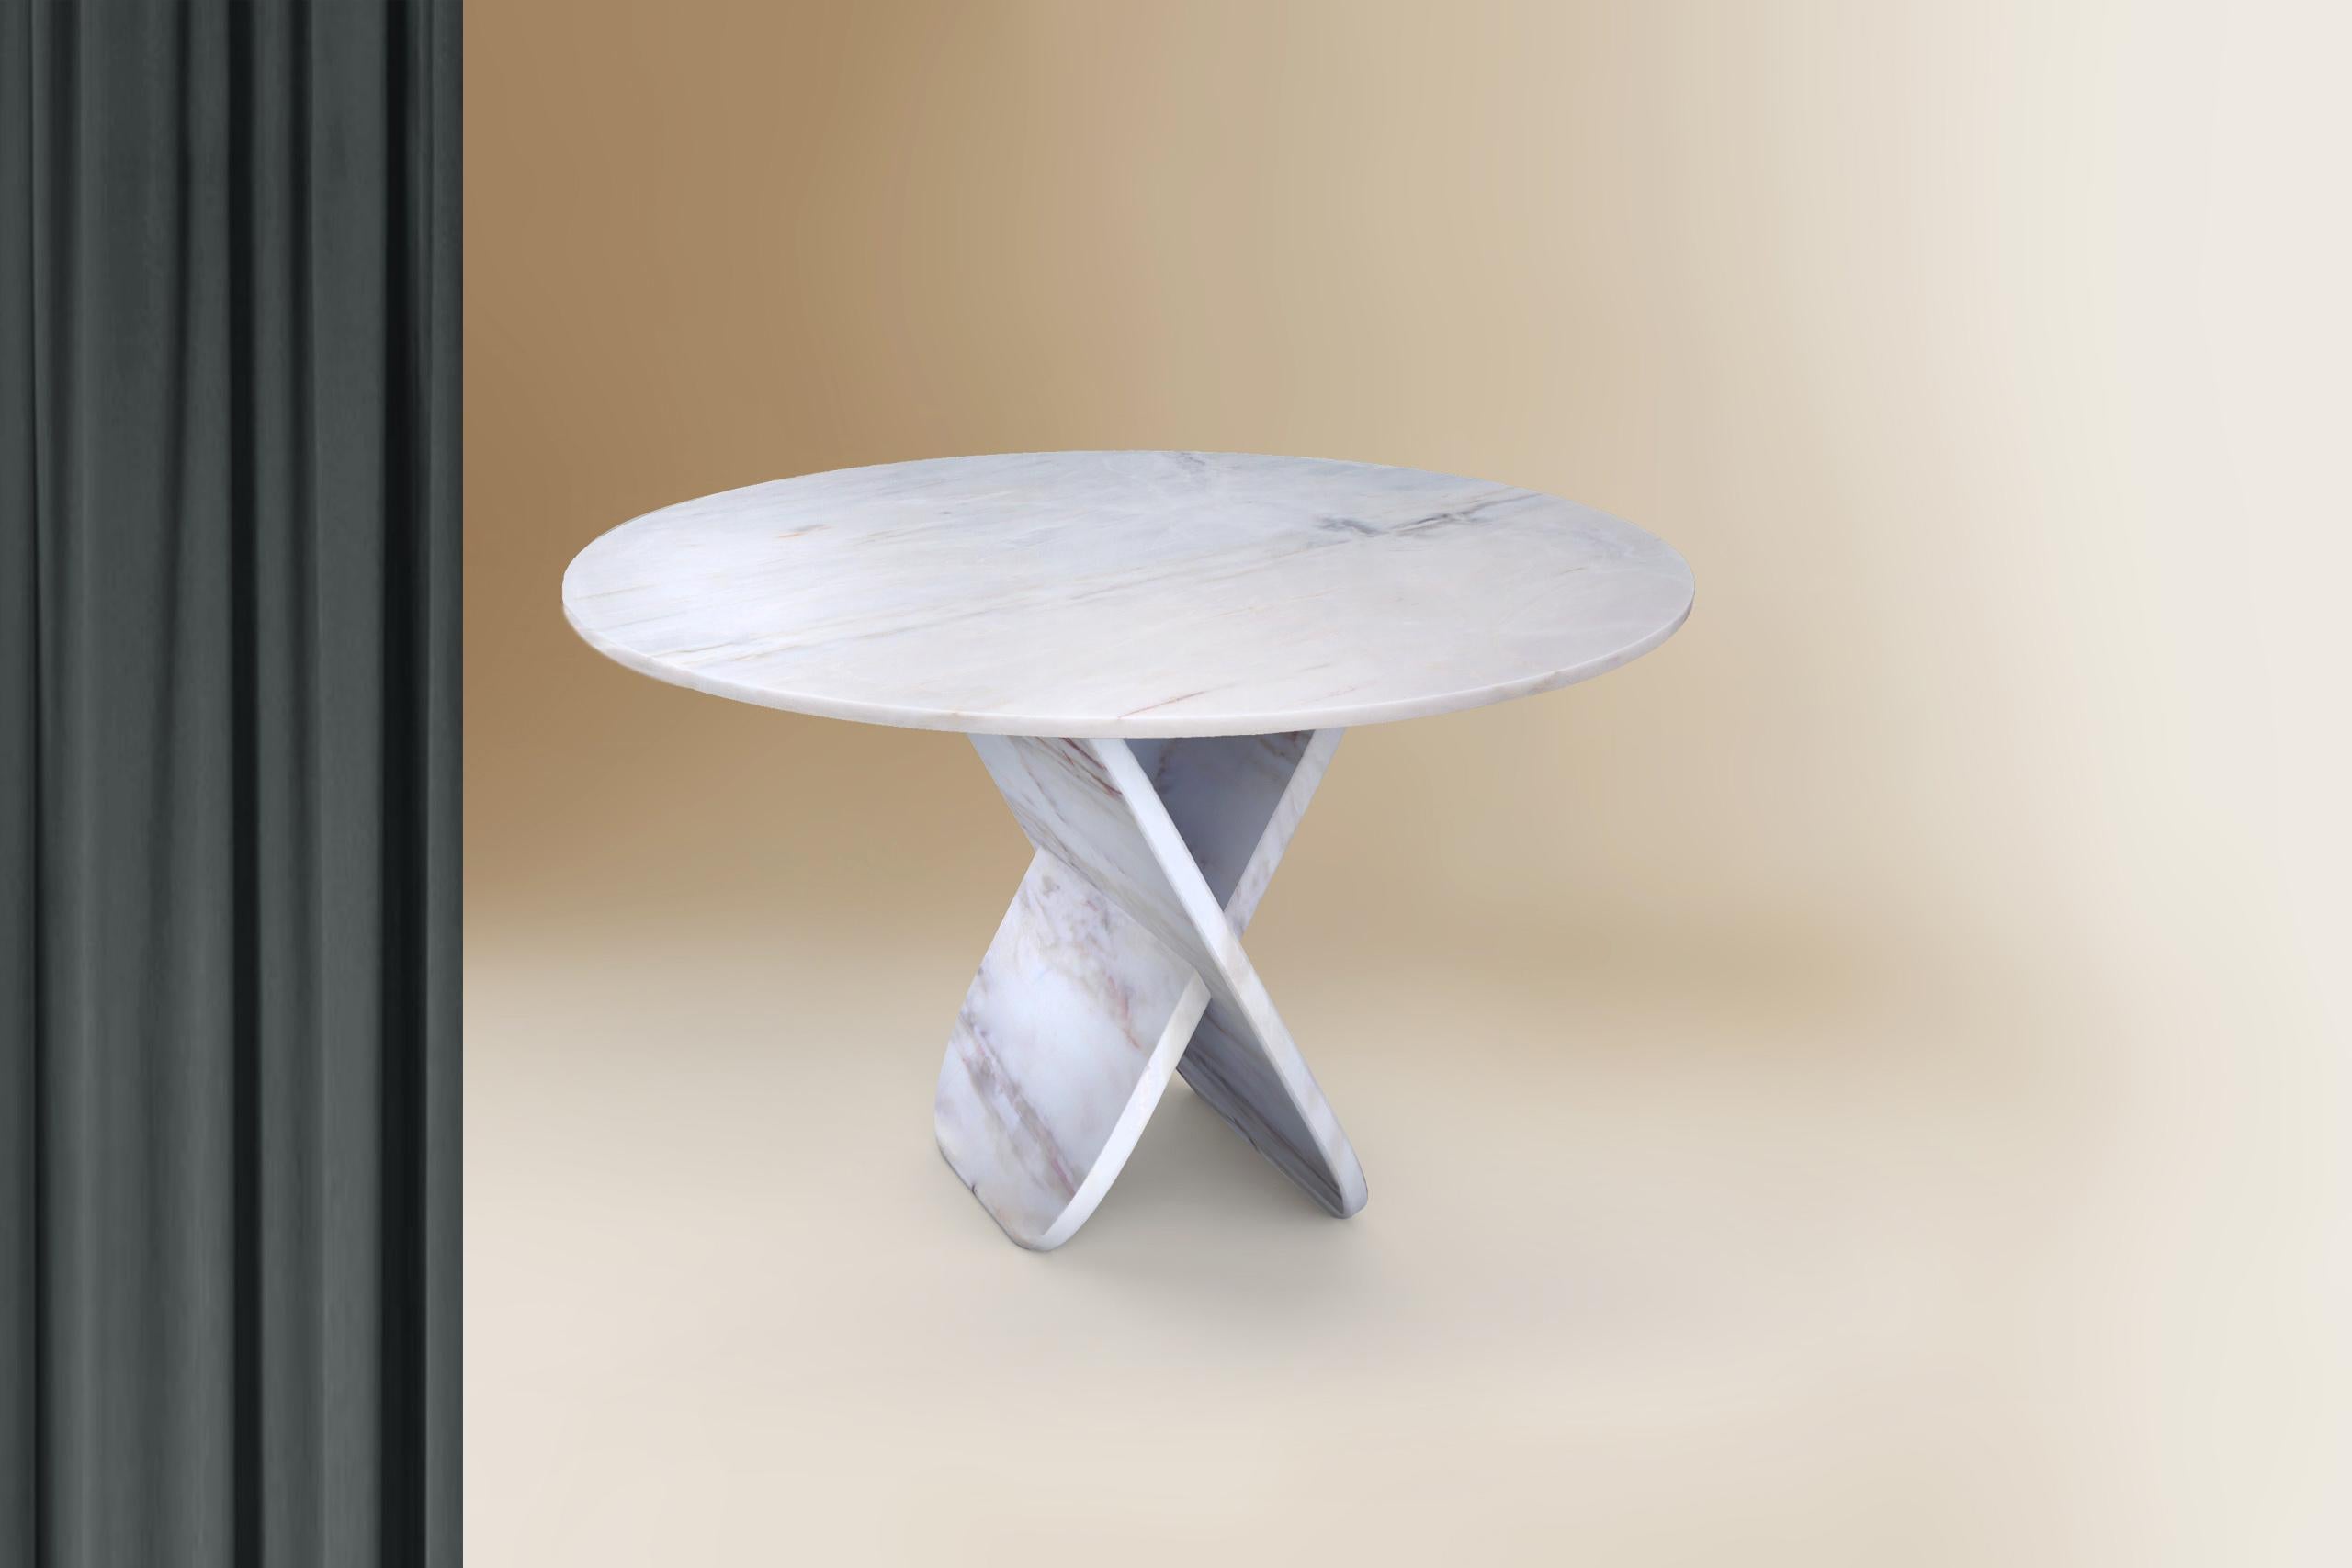 La table Balance est l'une des créations du prestigieux designer espagnol Sergio Prieto. Il s'agit d'une table de salle à manger d'un diamètre de 120-150cm et d'une hauteur de 79cm, réalisée en marbre blanc du Portugal, collecté et travaillé